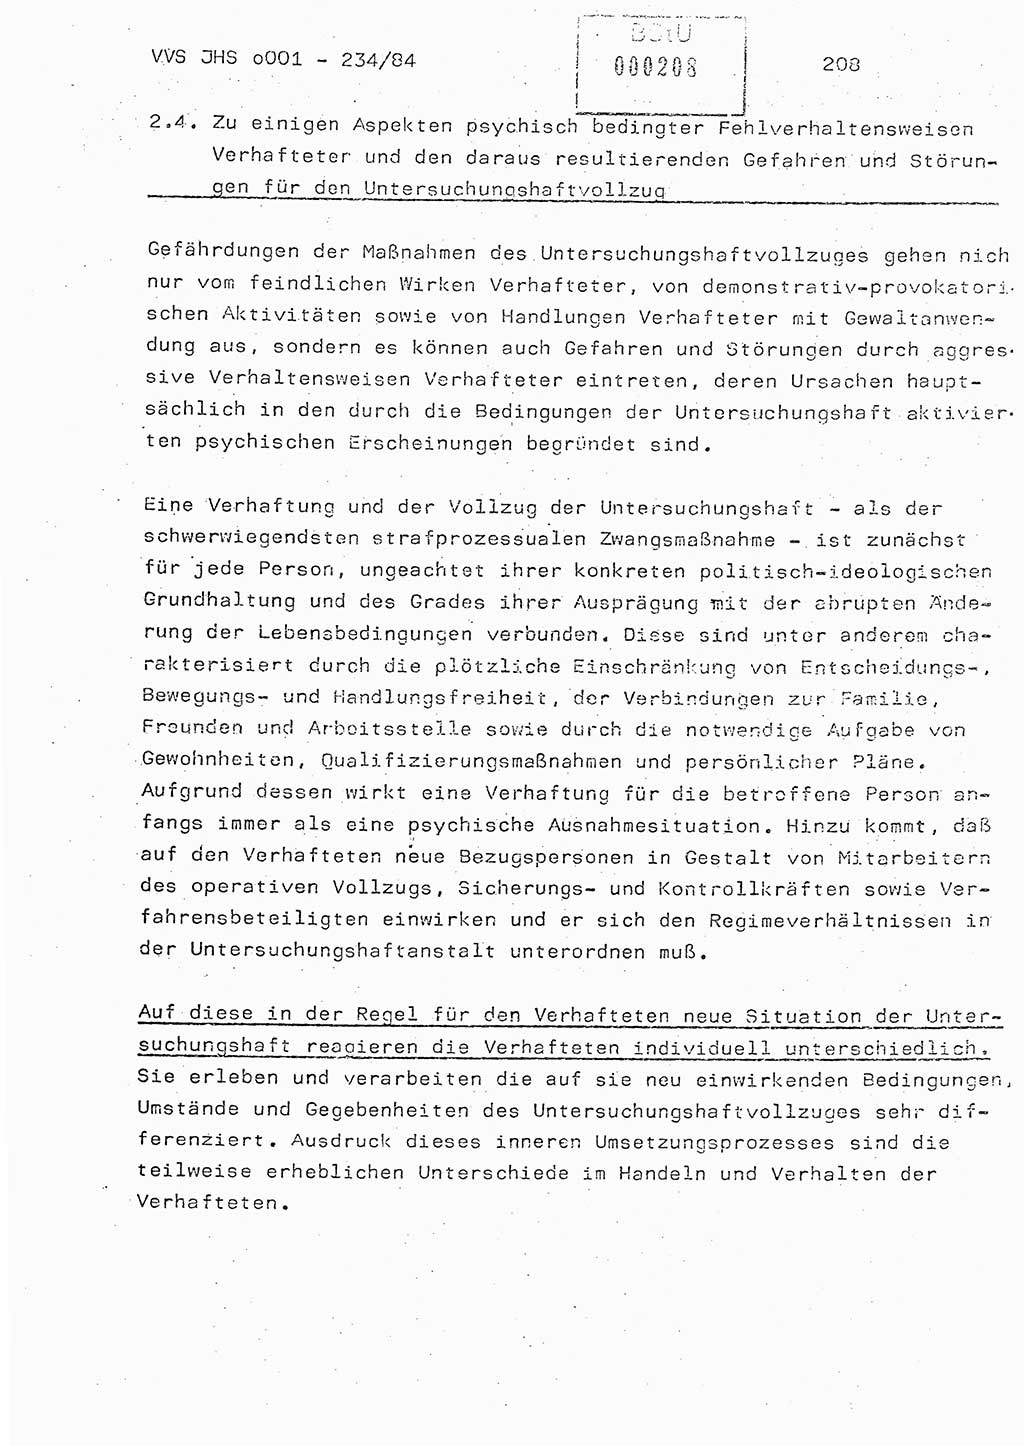 Dissertation Oberst Siegfried Rataizick (Abt. ⅩⅣ), Oberstleutnant Volkmar Heinz (Abt. ⅩⅣ), Oberstleutnant Werner Stein (HA Ⅸ), Hauptmann Heinz Conrad (JHS), Ministerium für Staatssicherheit (MfS) [Deutsche Demokratische Republik (DDR)], Juristische Hochschule (JHS), Vertrauliche Verschlußsache (VVS) o001-234/84, Potsdam 1984, Seite 208 (Diss. MfS DDR JHS VVS o001-234/84 1984, S. 208)